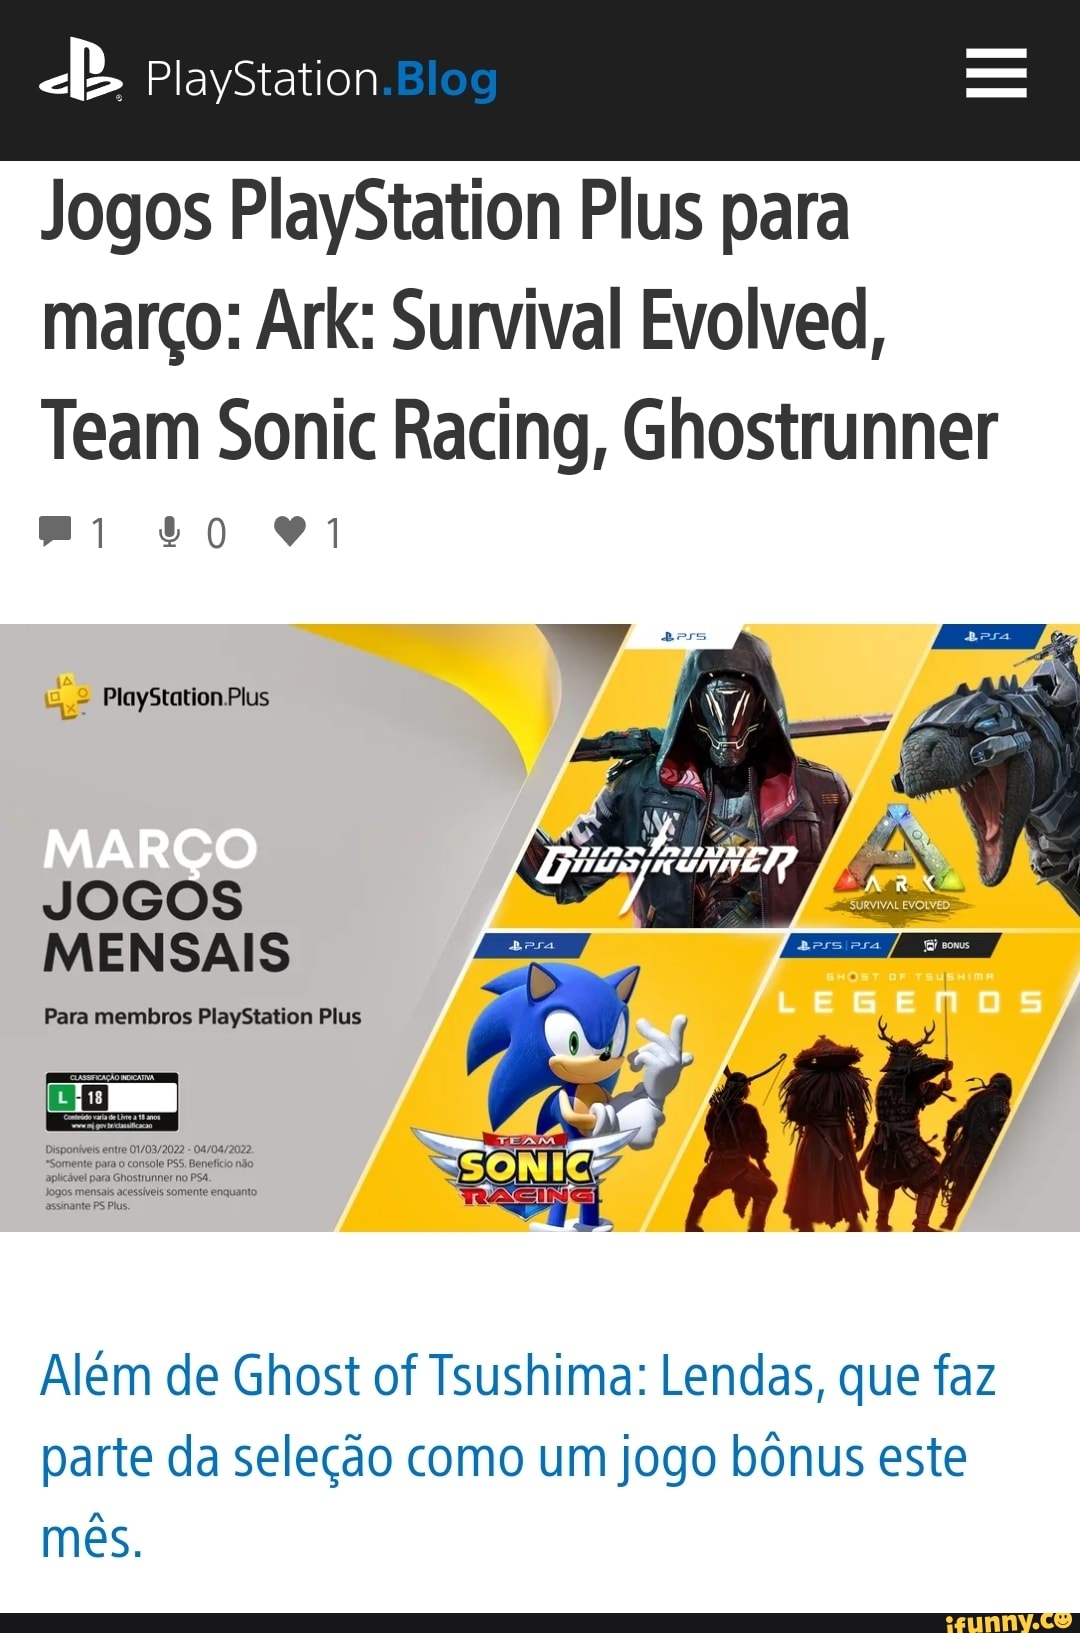 Ghostrunner, Team Sonic Racing e Ark: Survival Evolved são os